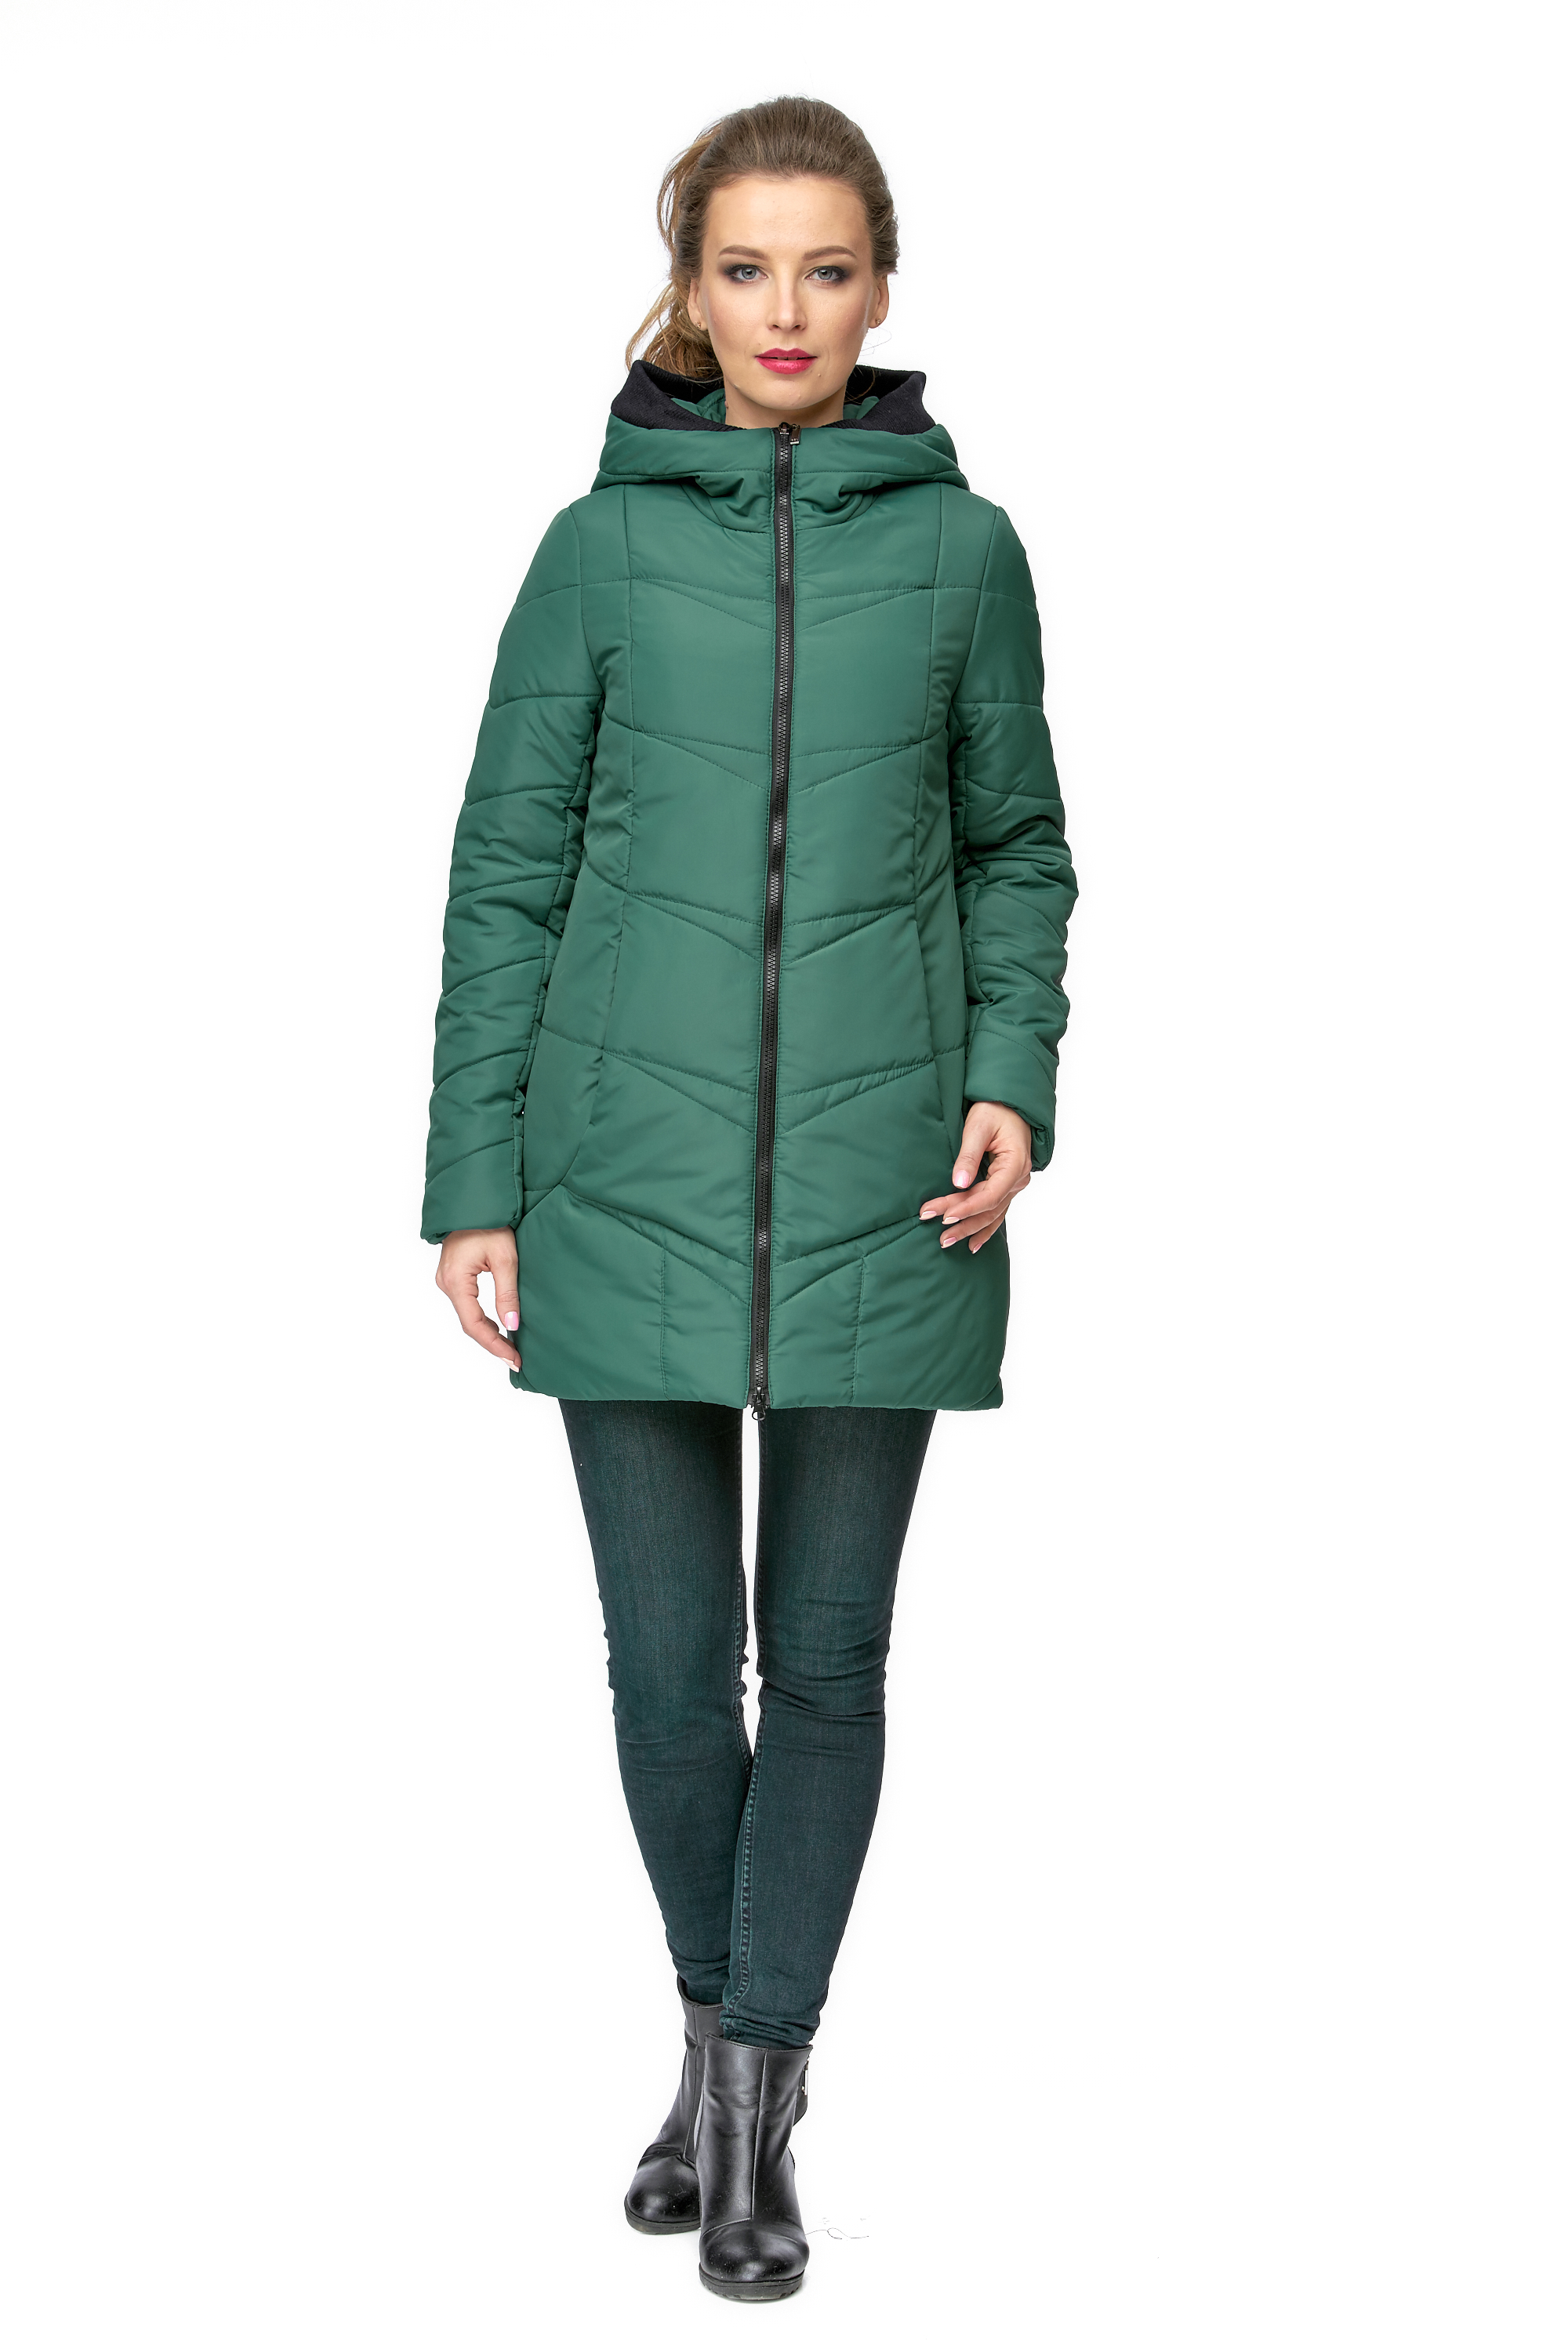 Куртка женская из текстиля с капюшоном МОСМЕХА зеленый 8001009 